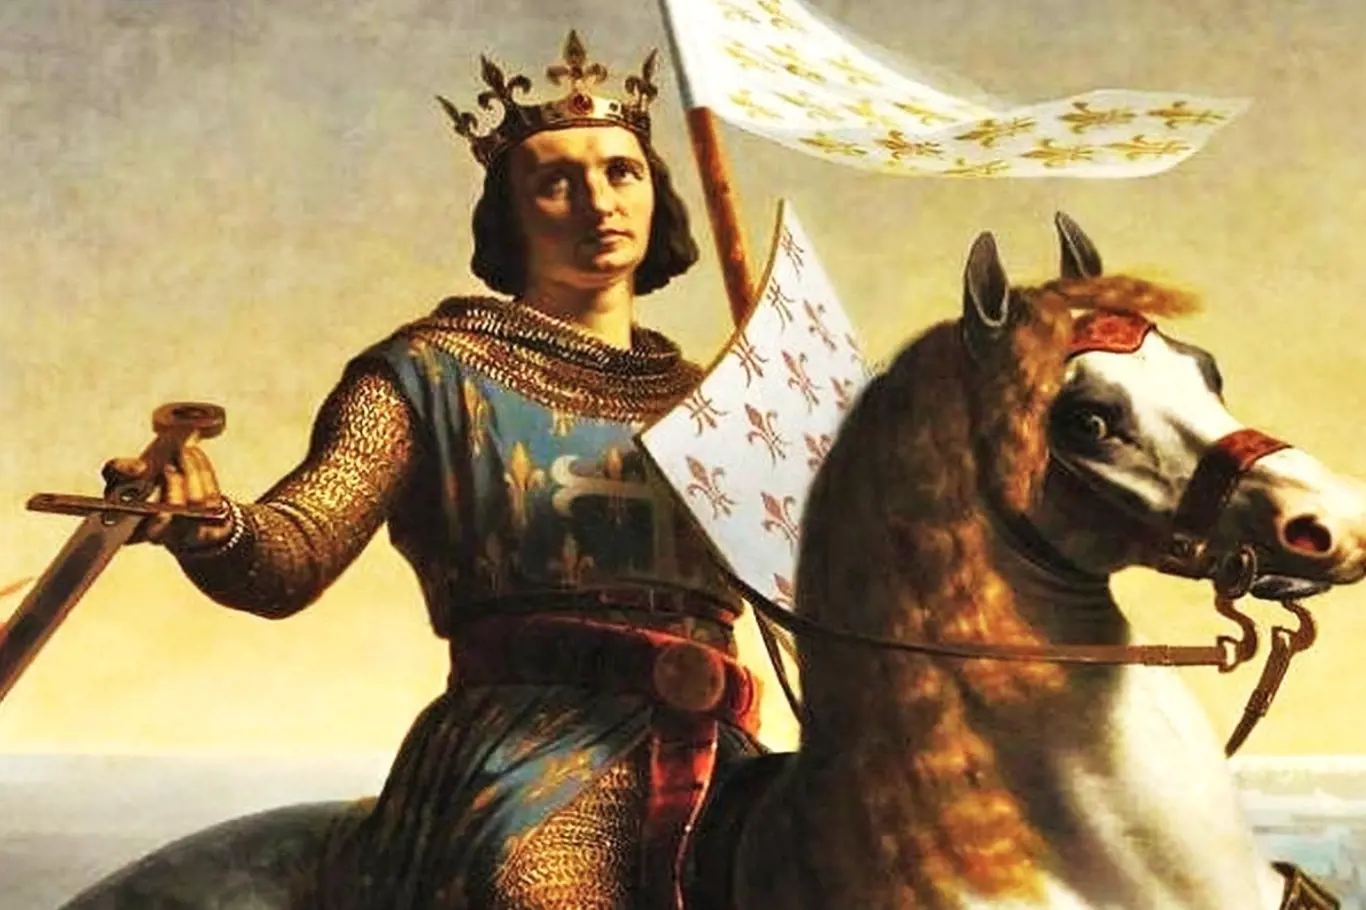 Král Ludvík IX zemřel na kurděje